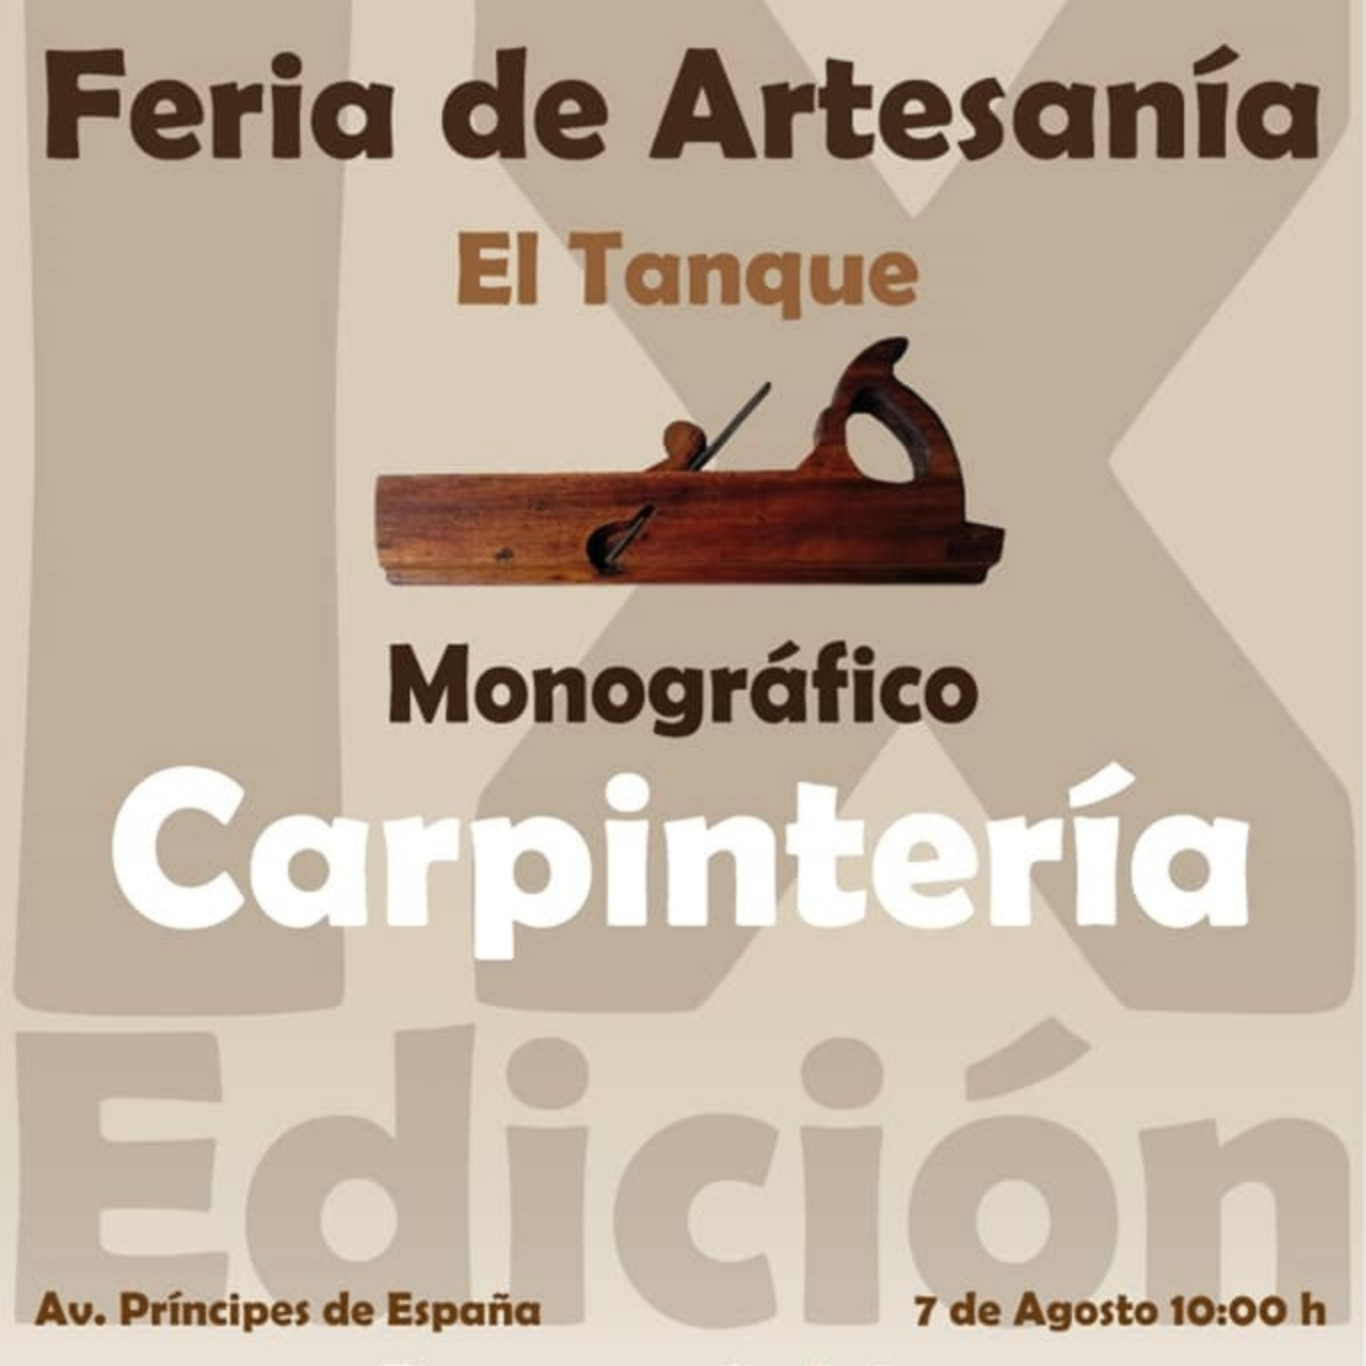 Cartel de la 9ª Feria de Artesanía de El Tanque